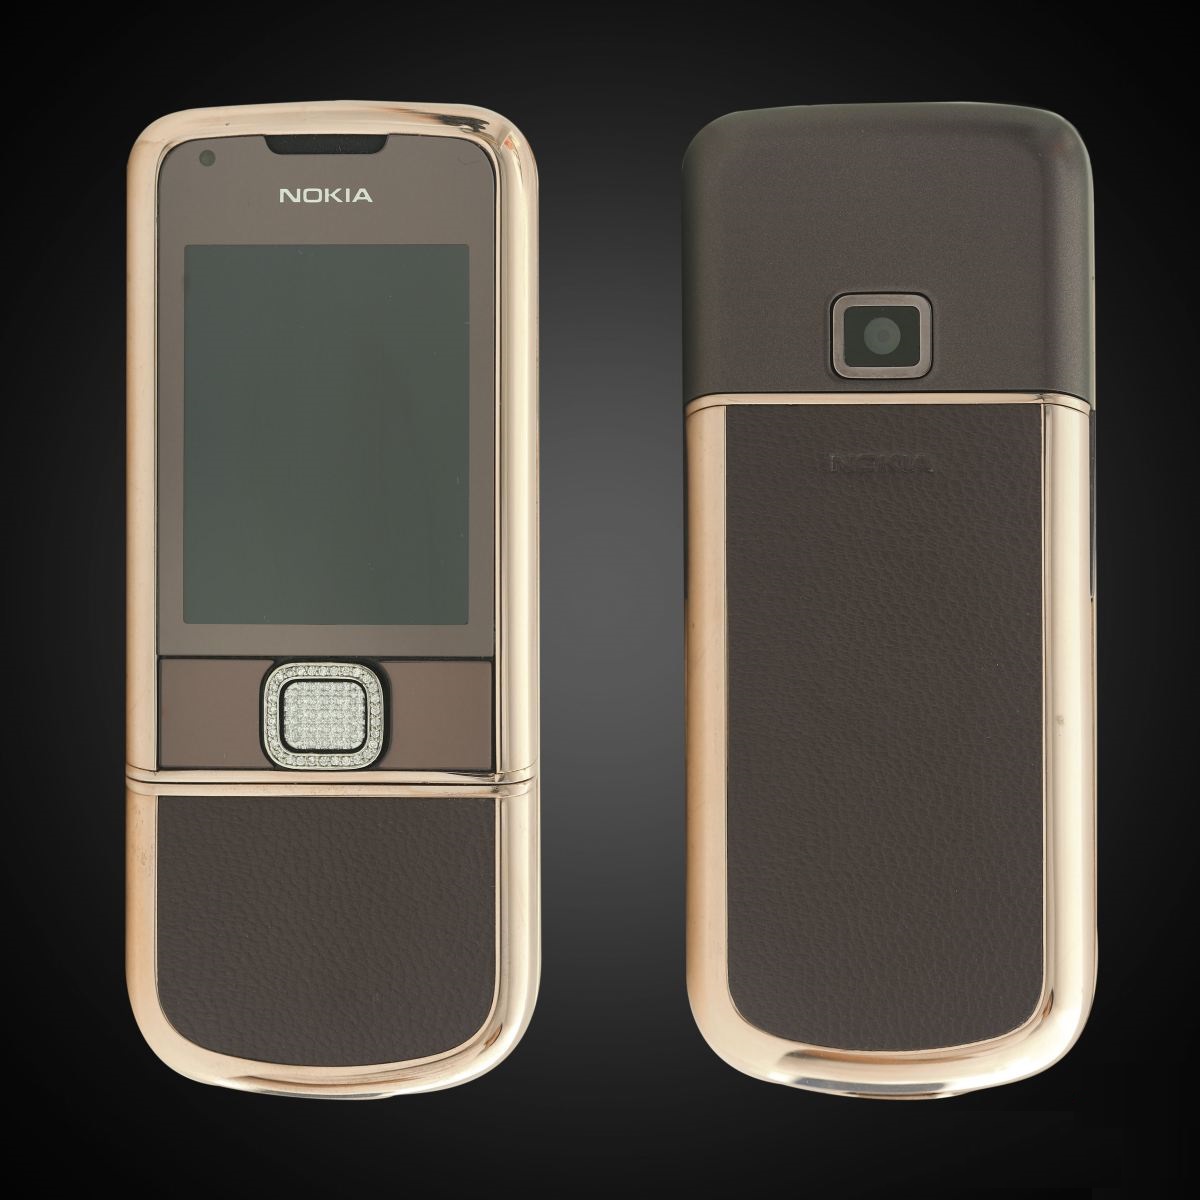 Nokia 8800E Rose Gold - Đặt mua điện thoại Nokia 8800E Rose Gold đính đá.
Điện thoại Nokia 8800E Rose Gold đính đá là một sản phẩm đẳng cấp và sang trọng đang hot trên thị trường. Với thiết kế độc đáo và chất liệu vật liệu cao cấp, chiếc điện thoại này sẽ là niềm tự hào của bạn. Hãy đặt mua ngay hôm nay để được trải nghiệm những tính năng tiên tiến và đạt đẳng cấp trong giới thượng lưu.